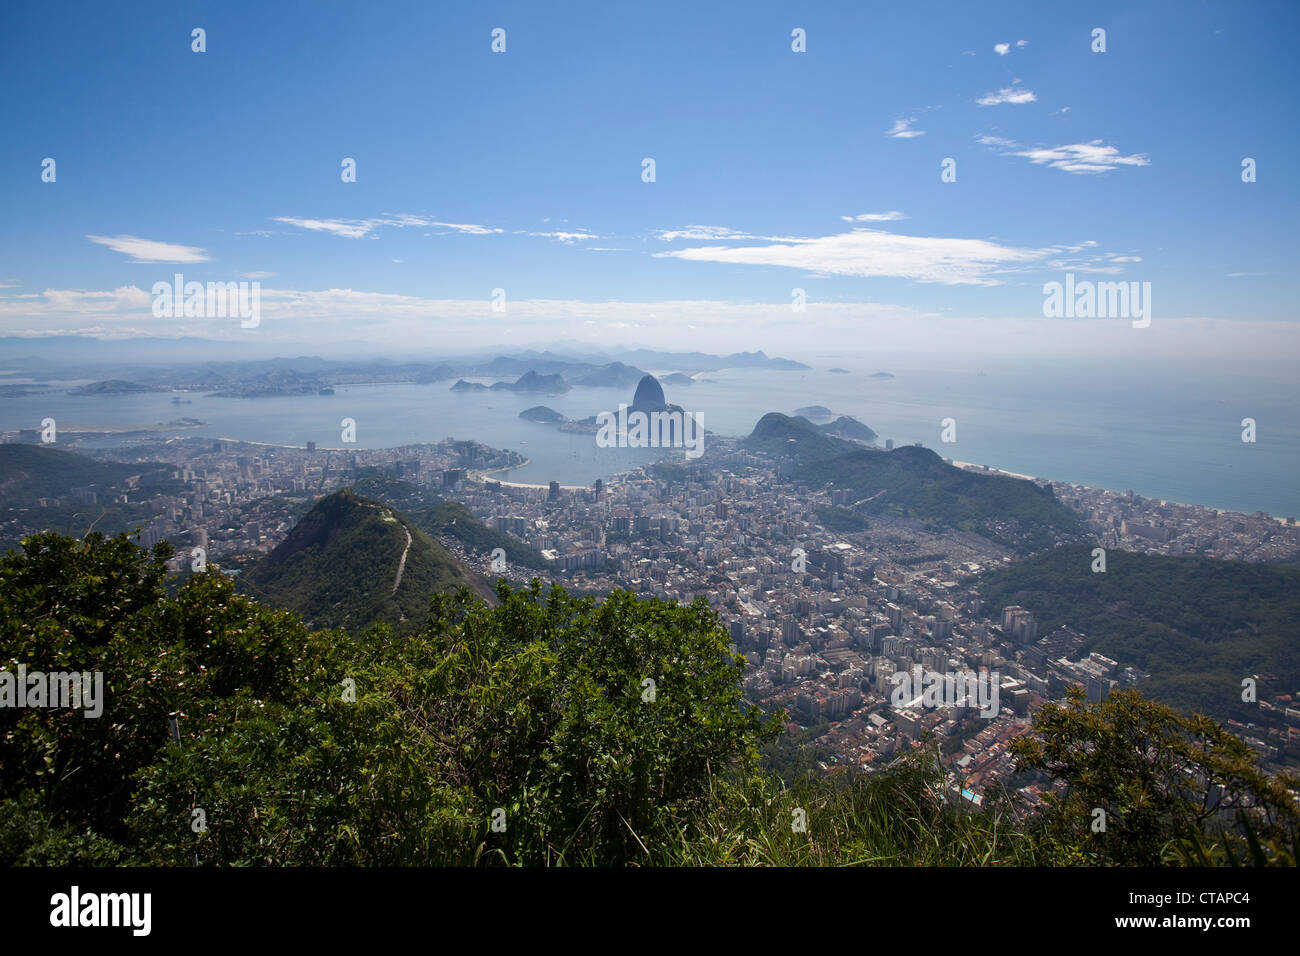 View from Corcovado mountain over city with Pao de Acucar, Sugar Loaf mountain, Rio de Janeiro, Rio de Janeiro, Brazil, South Am Stock Photo